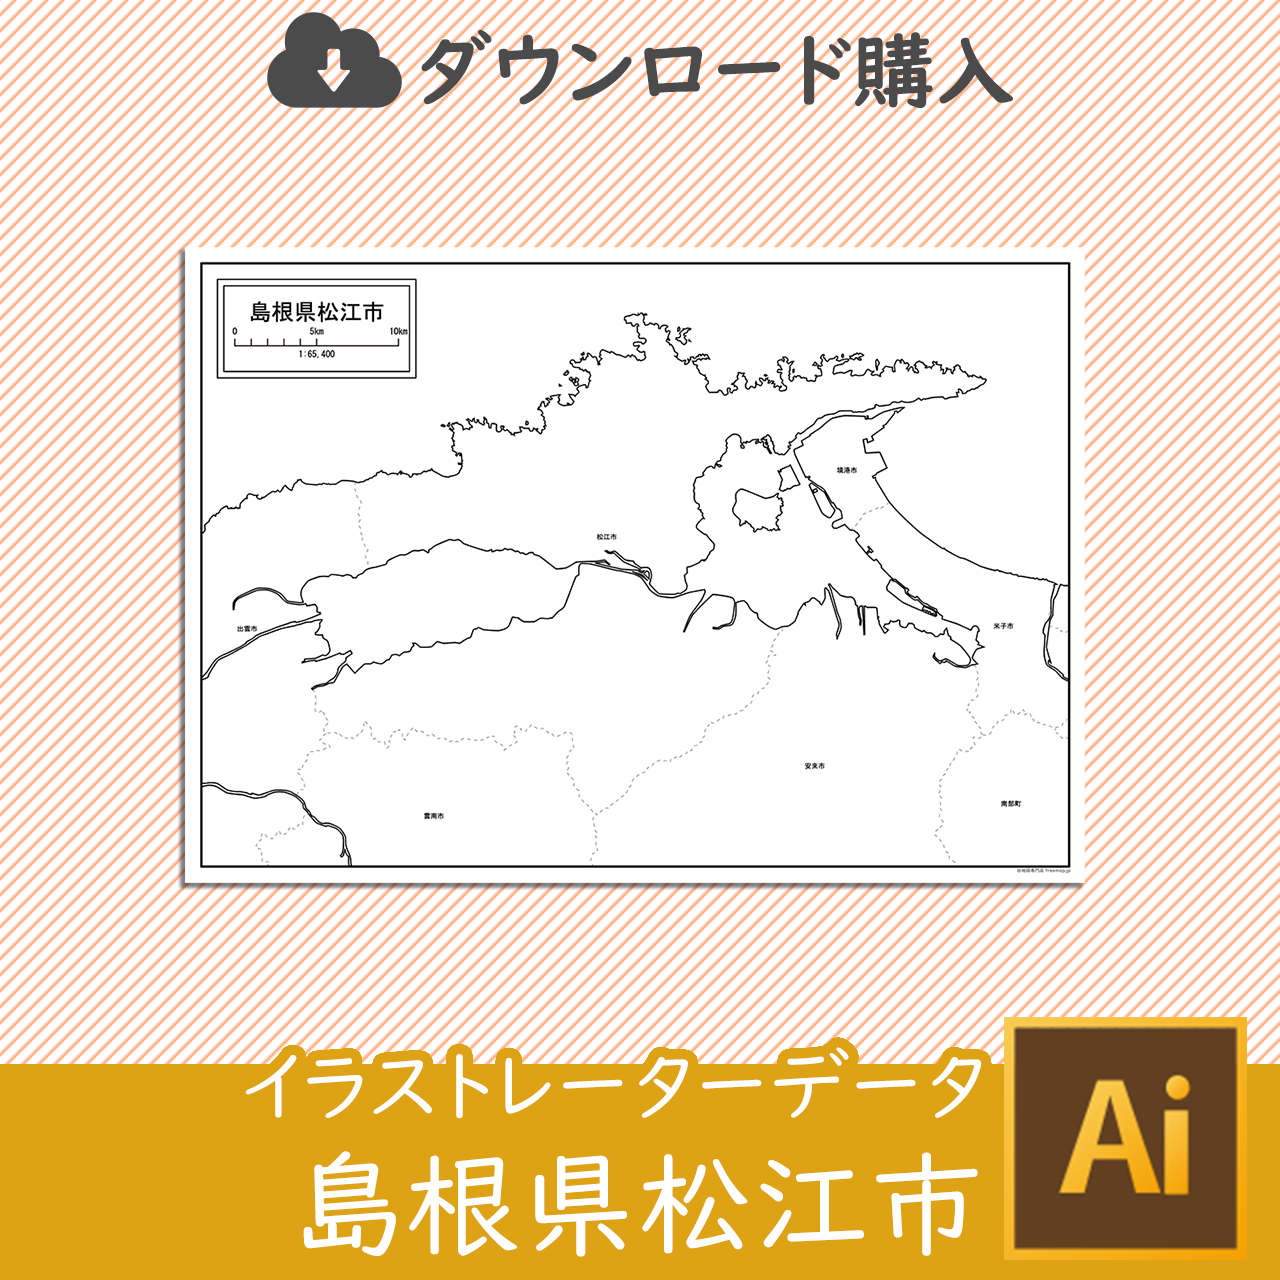 松江市のサムネイル画像